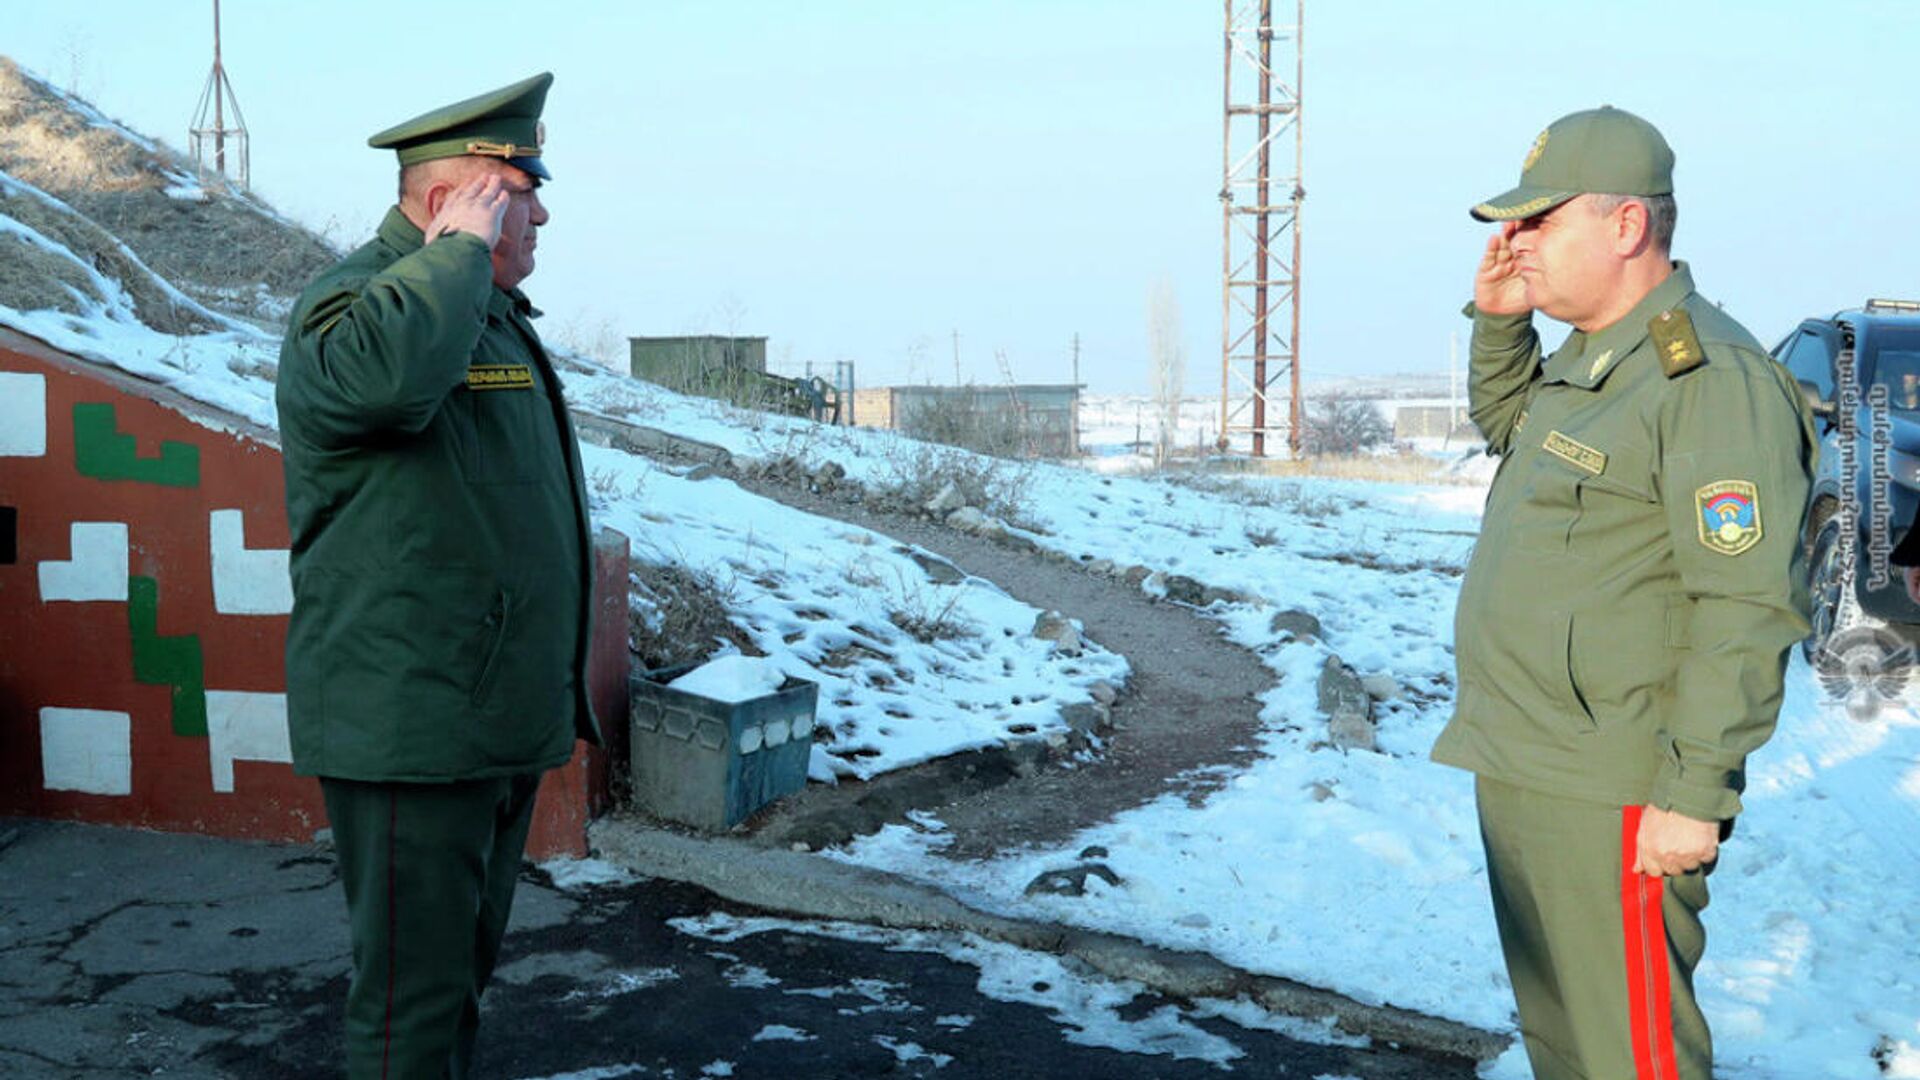 ՀՀ զինված ուժերի գլխավոր շտաբի պետ Արտակ Դավթյանն այցելել է ՀՕՊ զորամասերից մեկը - Sputnik Արմենիա, 1920, 28.12.2021